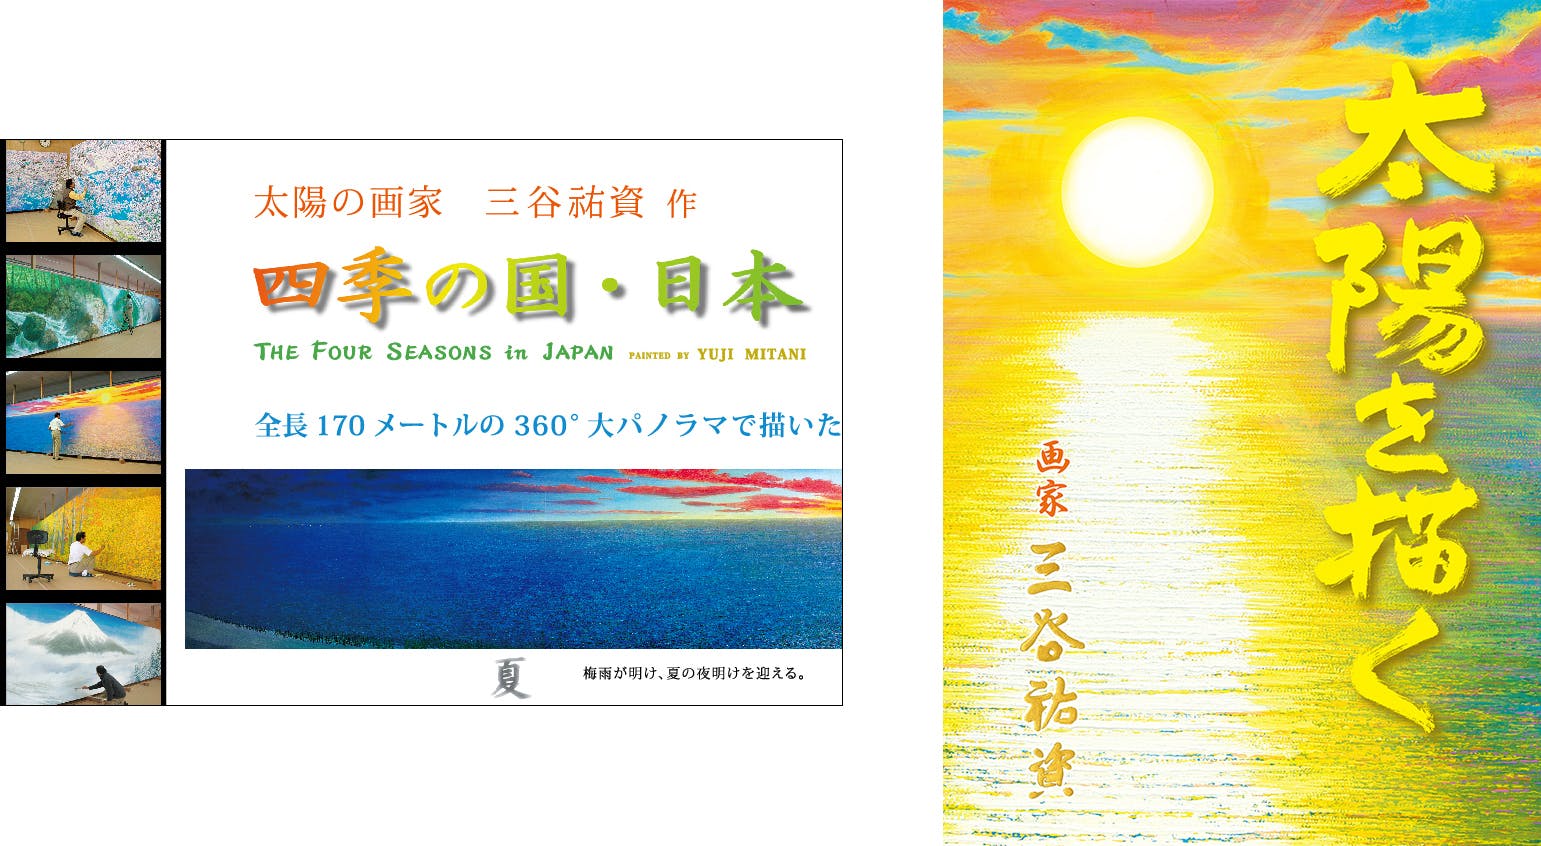 【全長170ｍ】 巨大絵画の展覧会「四季の国・日本」展を開催し